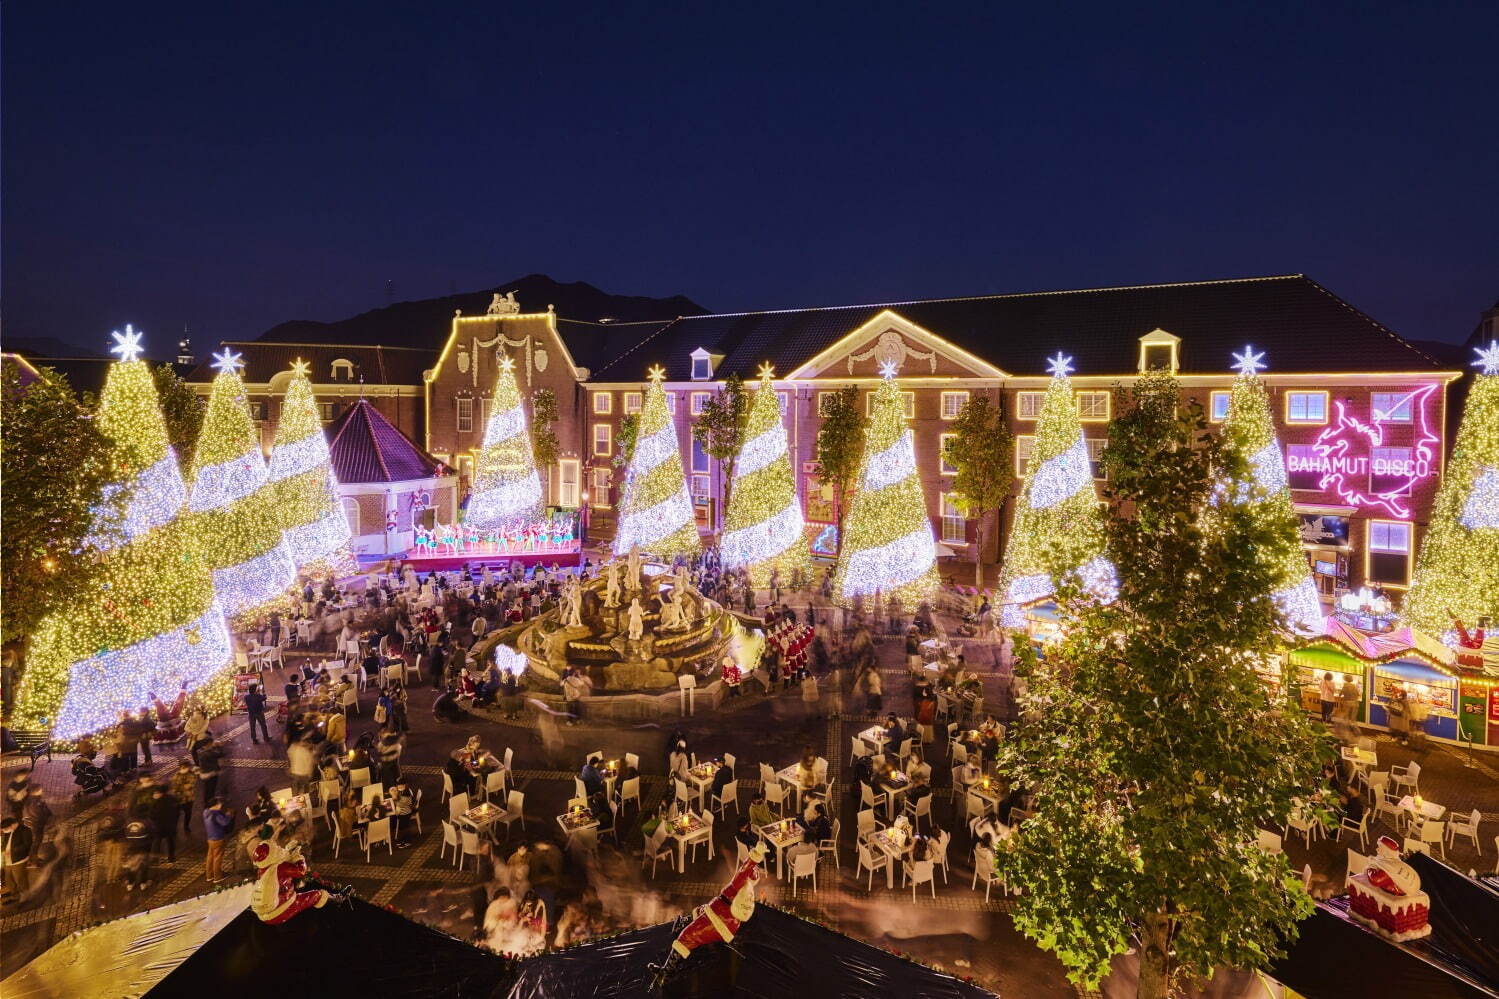 งานประดับไฟ “Christmas in the City of Lights” - Huis Ten Bosch จังหวัดนางาซากิ